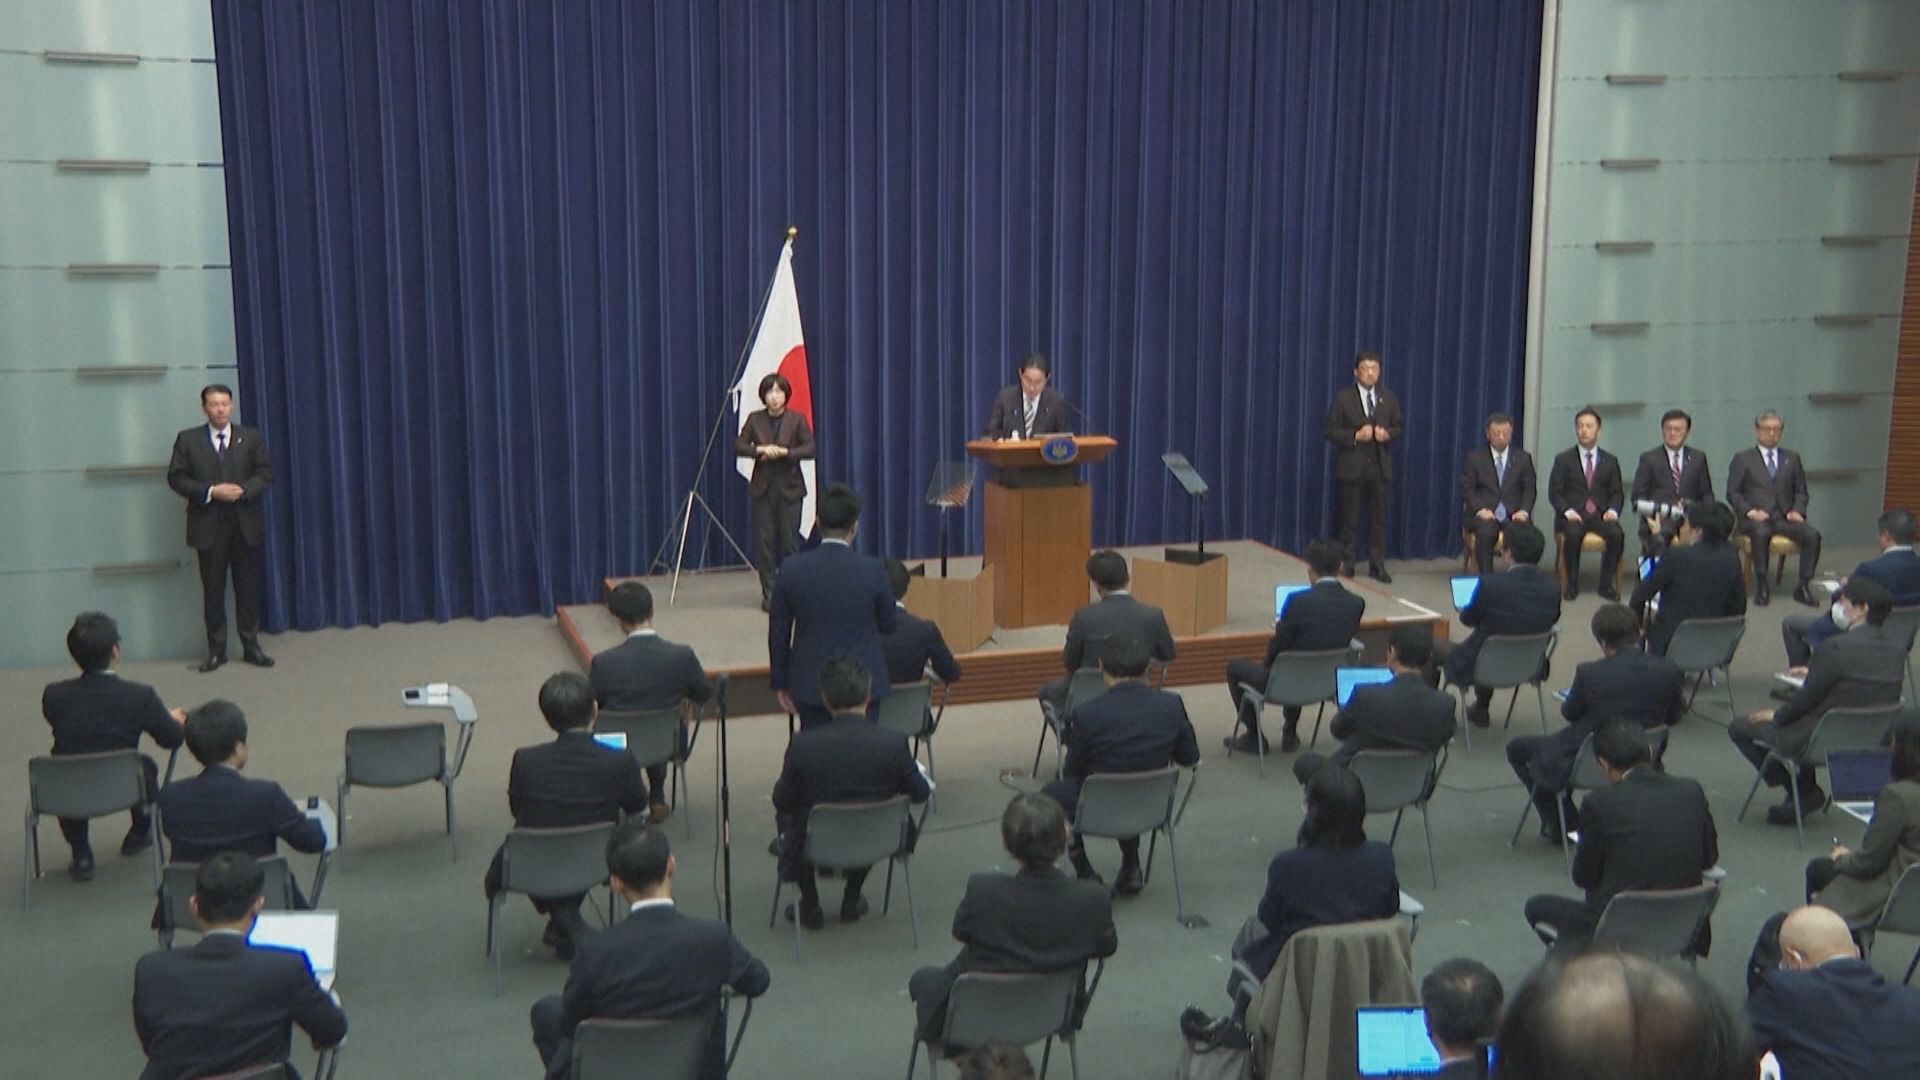 岸田改組內閣 據報將撤換四名「安倍派」閣員